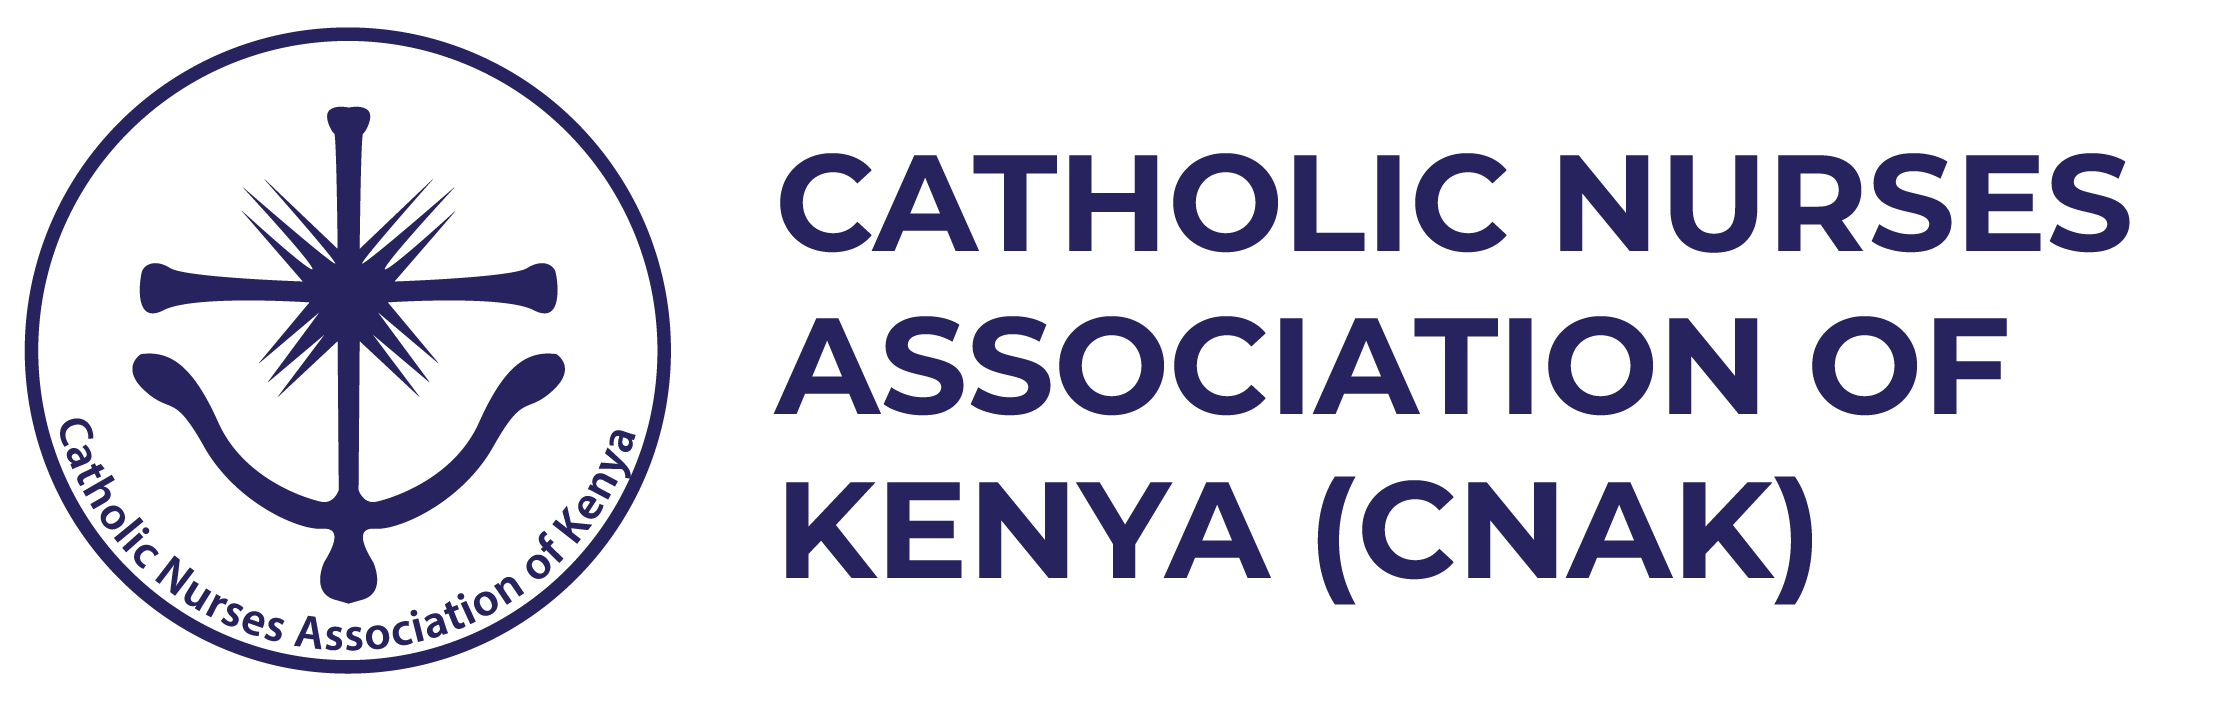 Catholic Nurses Association of Kenya (CNAK)